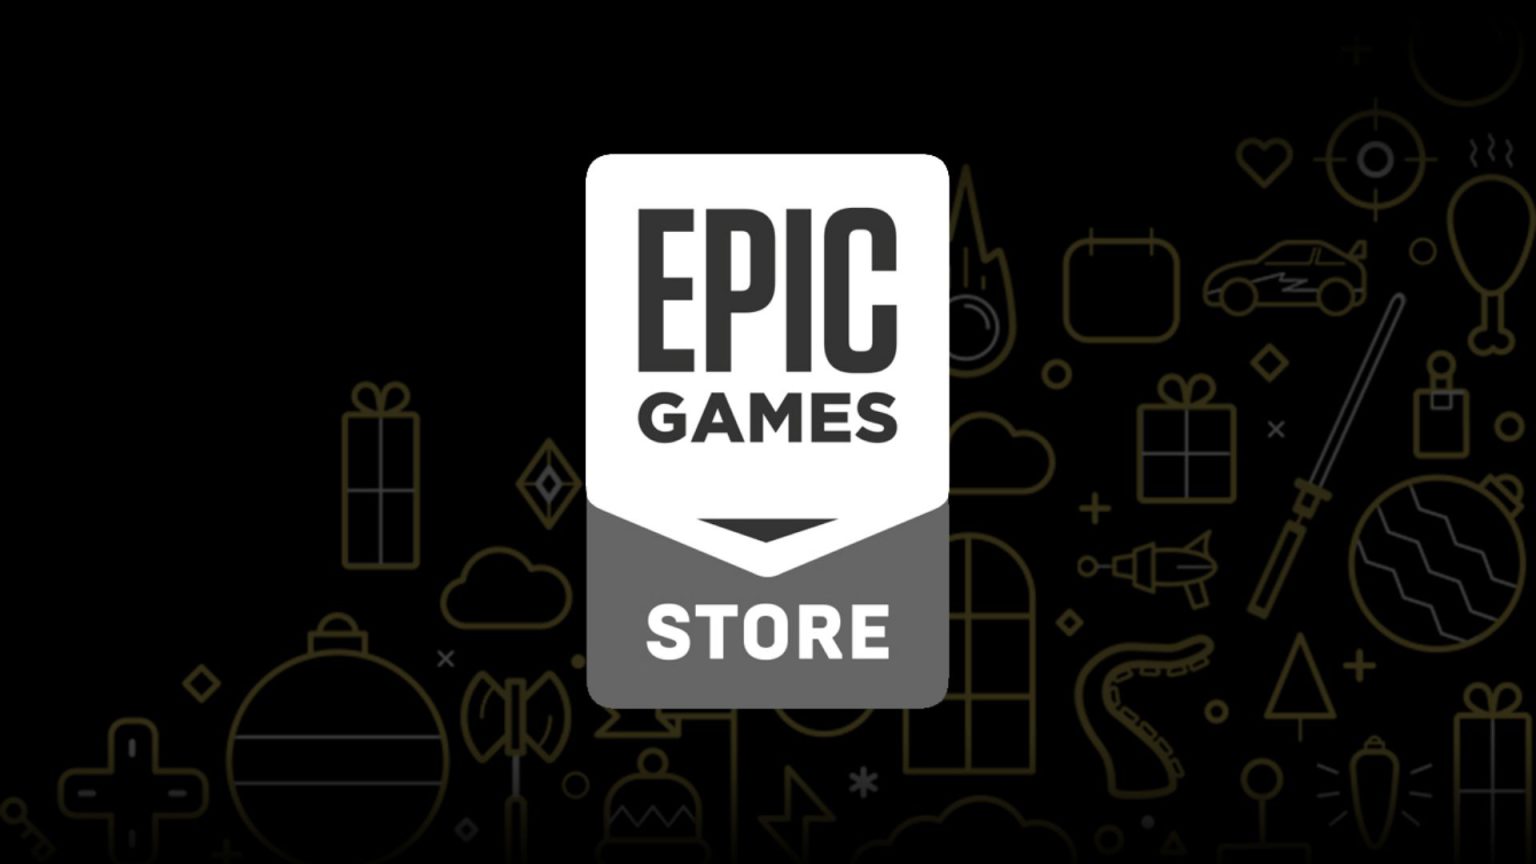 Puedes reclamar tu nuevo juego gratis de la Epic Games Store desde hoy mismo. No te pierdas el título de esta semana.